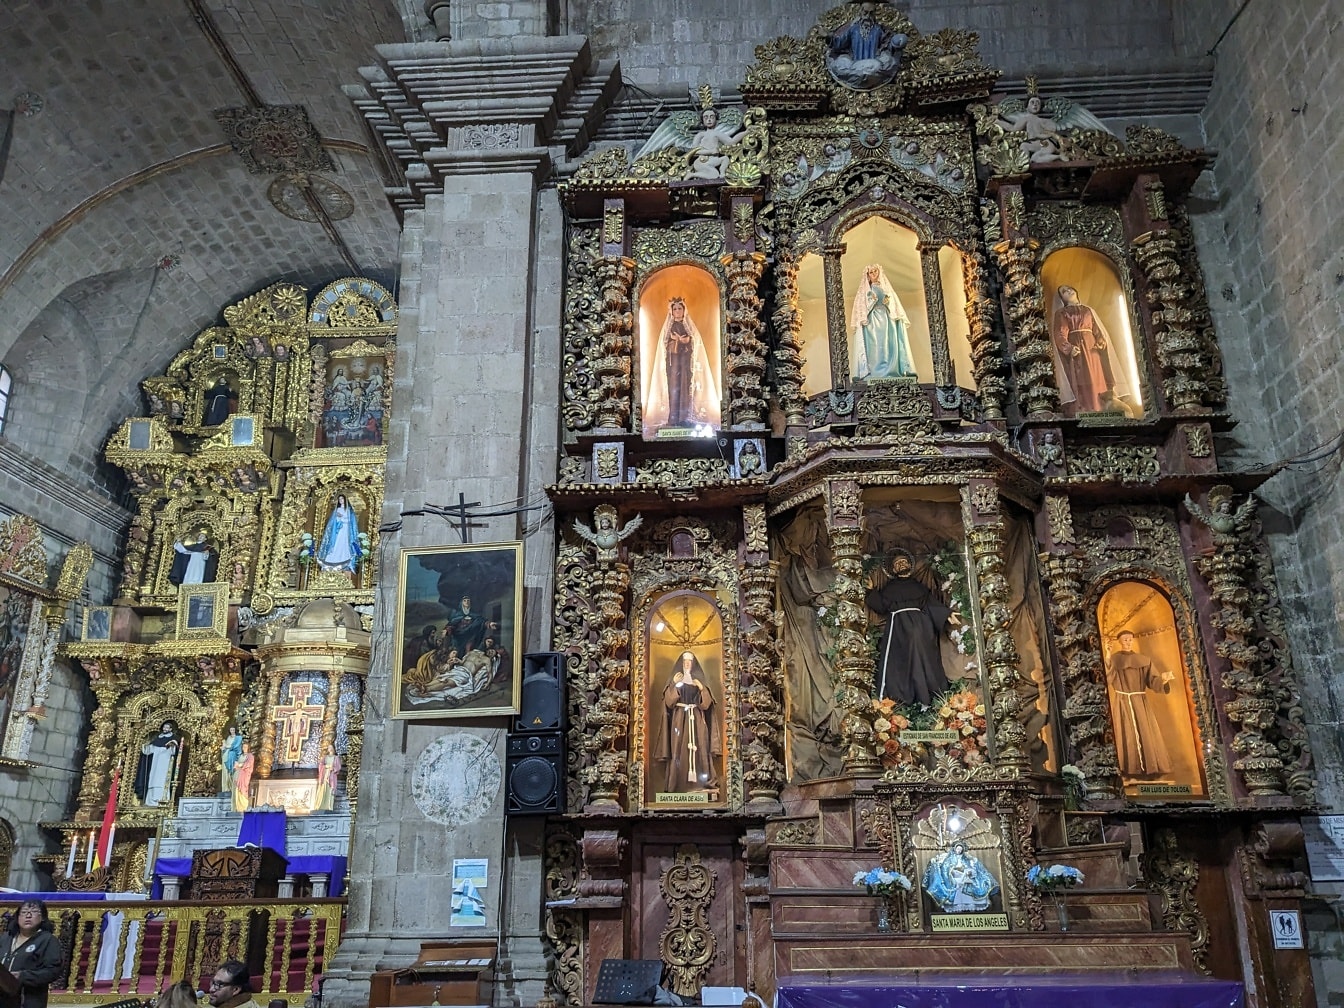 Interiør av kirken med dekorert alter med statuer av helgener i tradisjonell latino-amerikansk stil